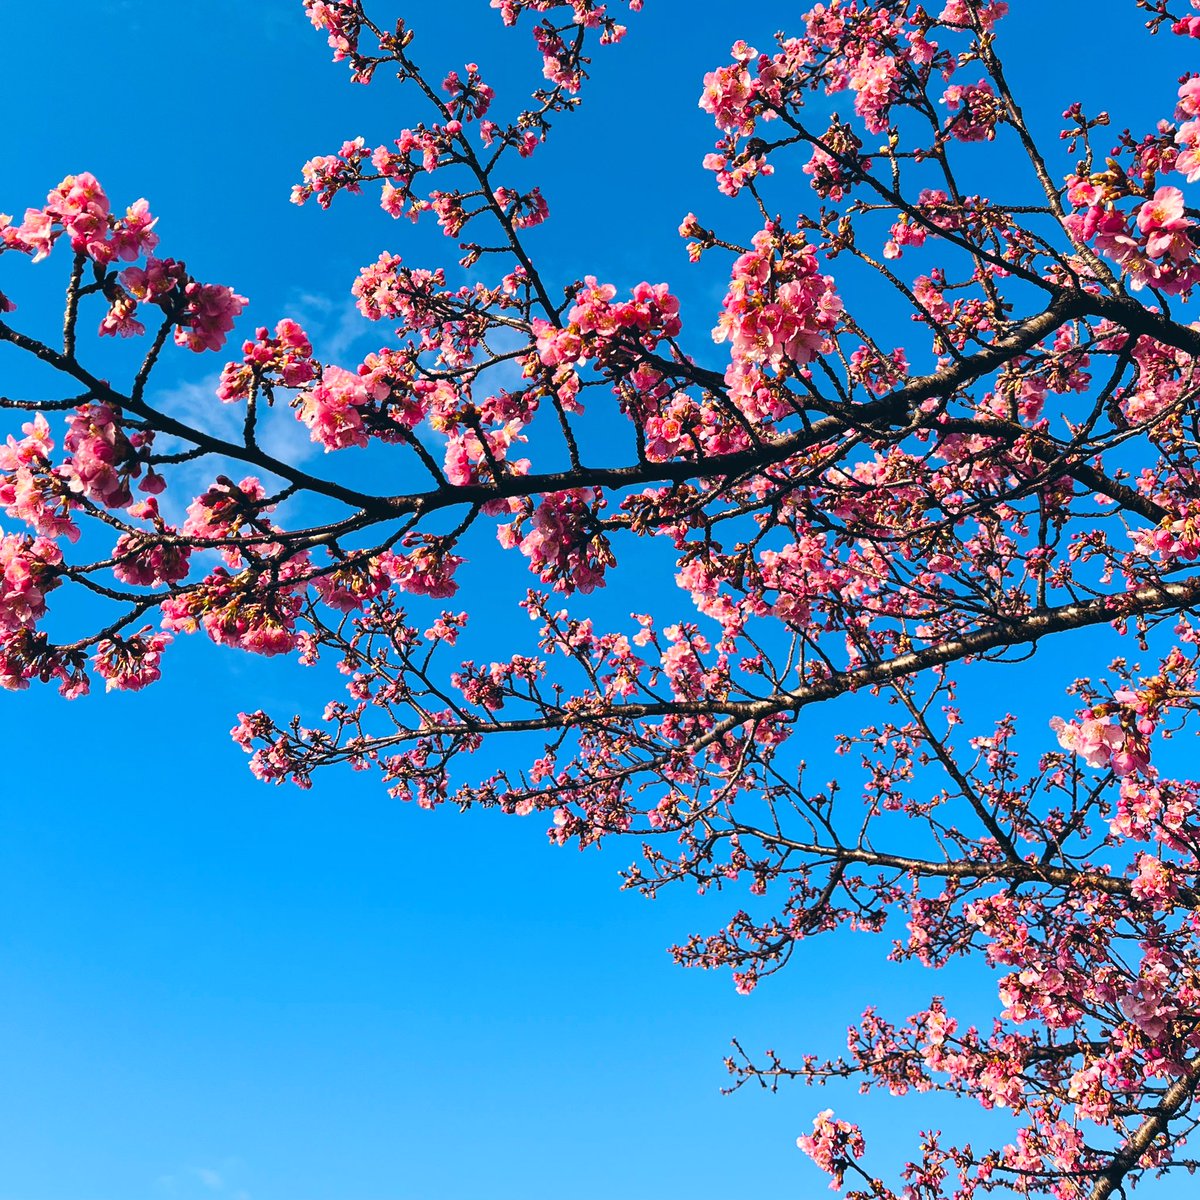 「春通り越して夏になってる気がします…暑い…!近所の河津桜はめちゃくちゃ元気! 」|おんせんのイラスト